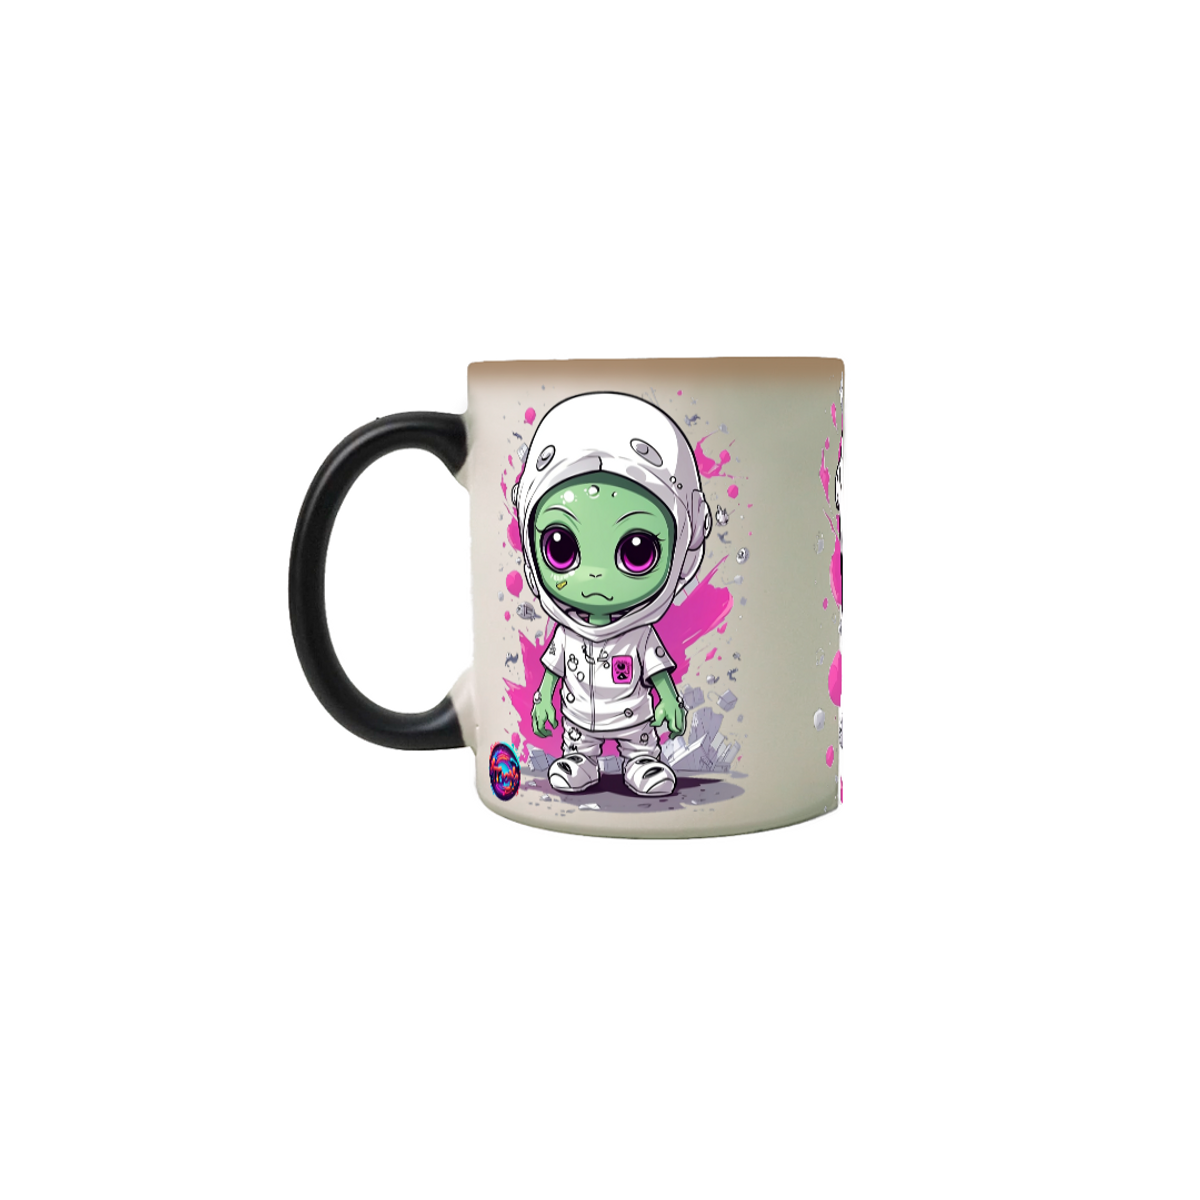 Nome do produto: Alien cute cartoon - Caneca Magica